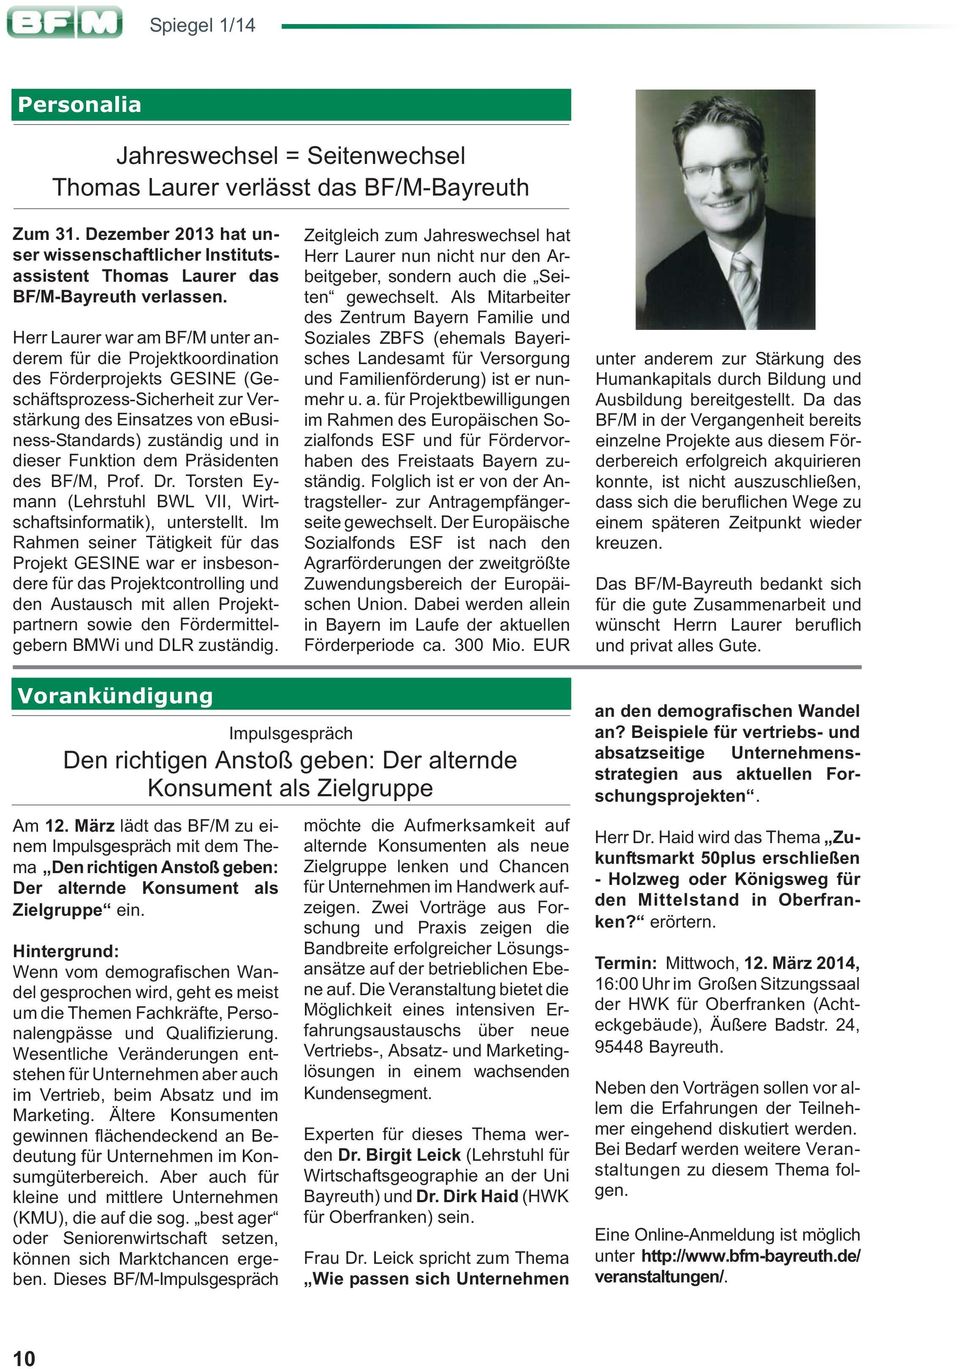 Funktion dem Präsidenten des BF/M, Prof. Dr. Torsten Eymann (Lehrstuhl BWL VII, Wirtschaftsinformatik), unterstellt.